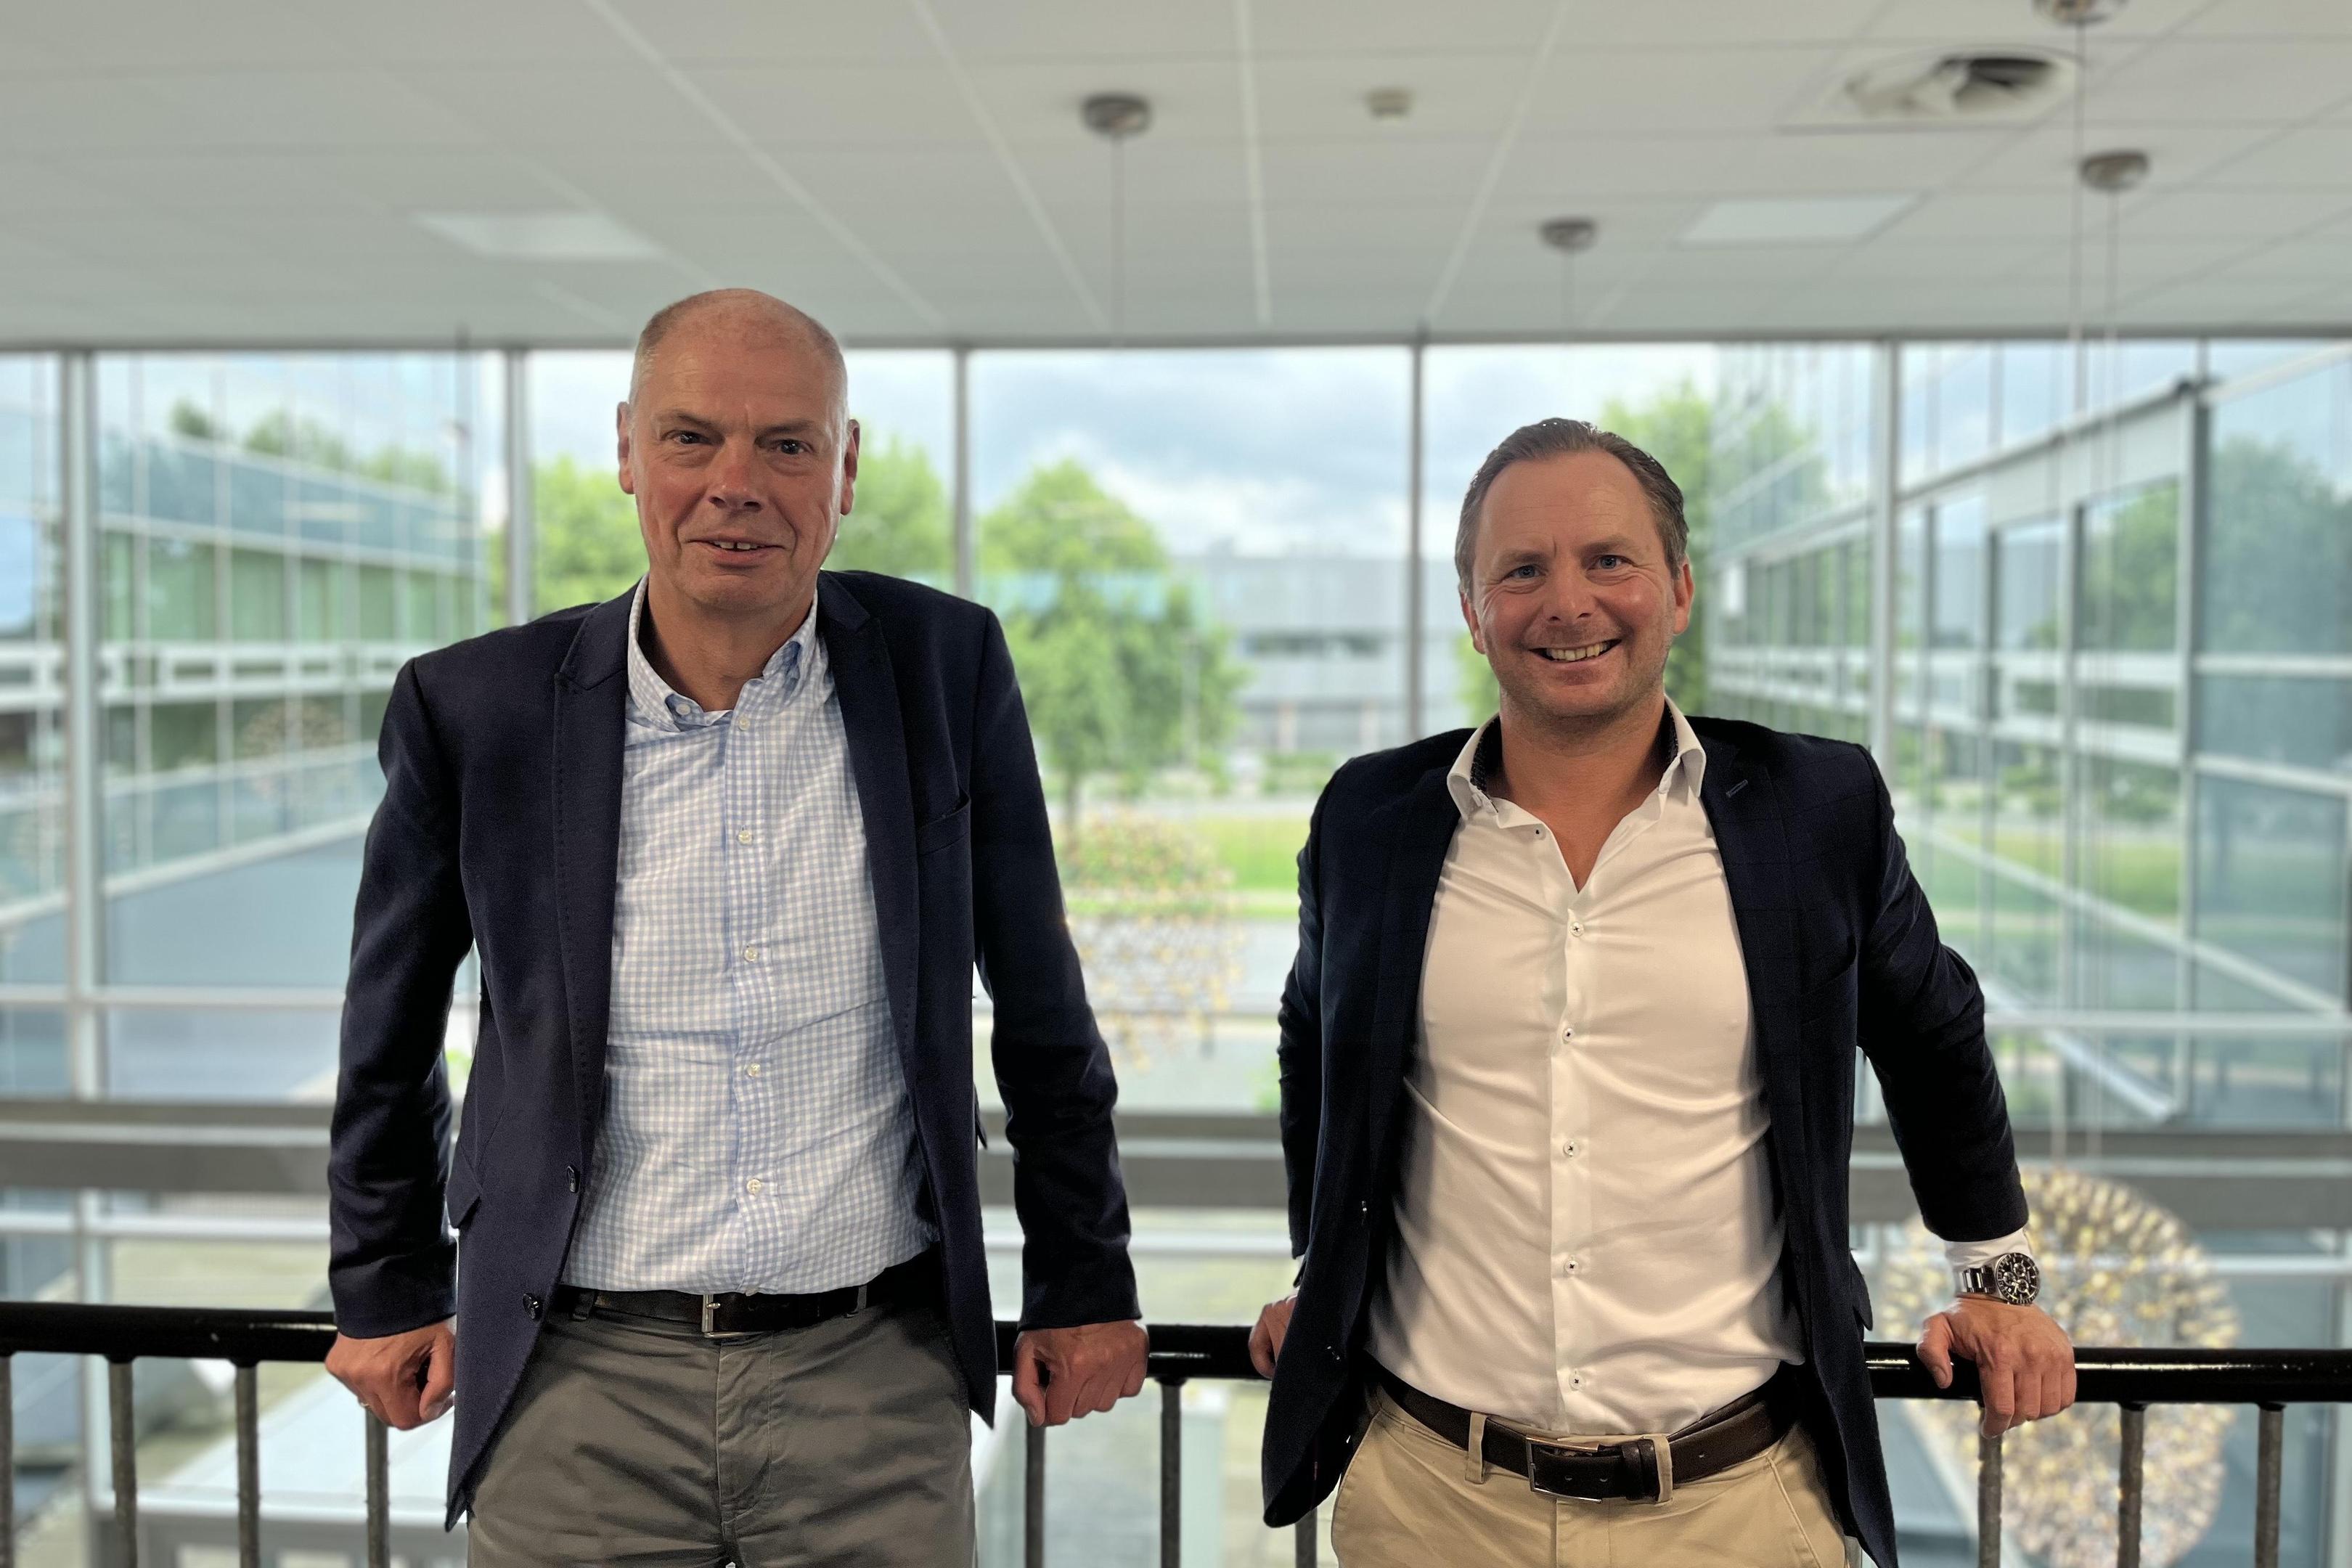 Sind zufrieden mit der Entwicklung der vergangenen Jahre: Avantis-Vorstand Manfred Sicking (links) und -Geschäftsführer Felix Delahaye.